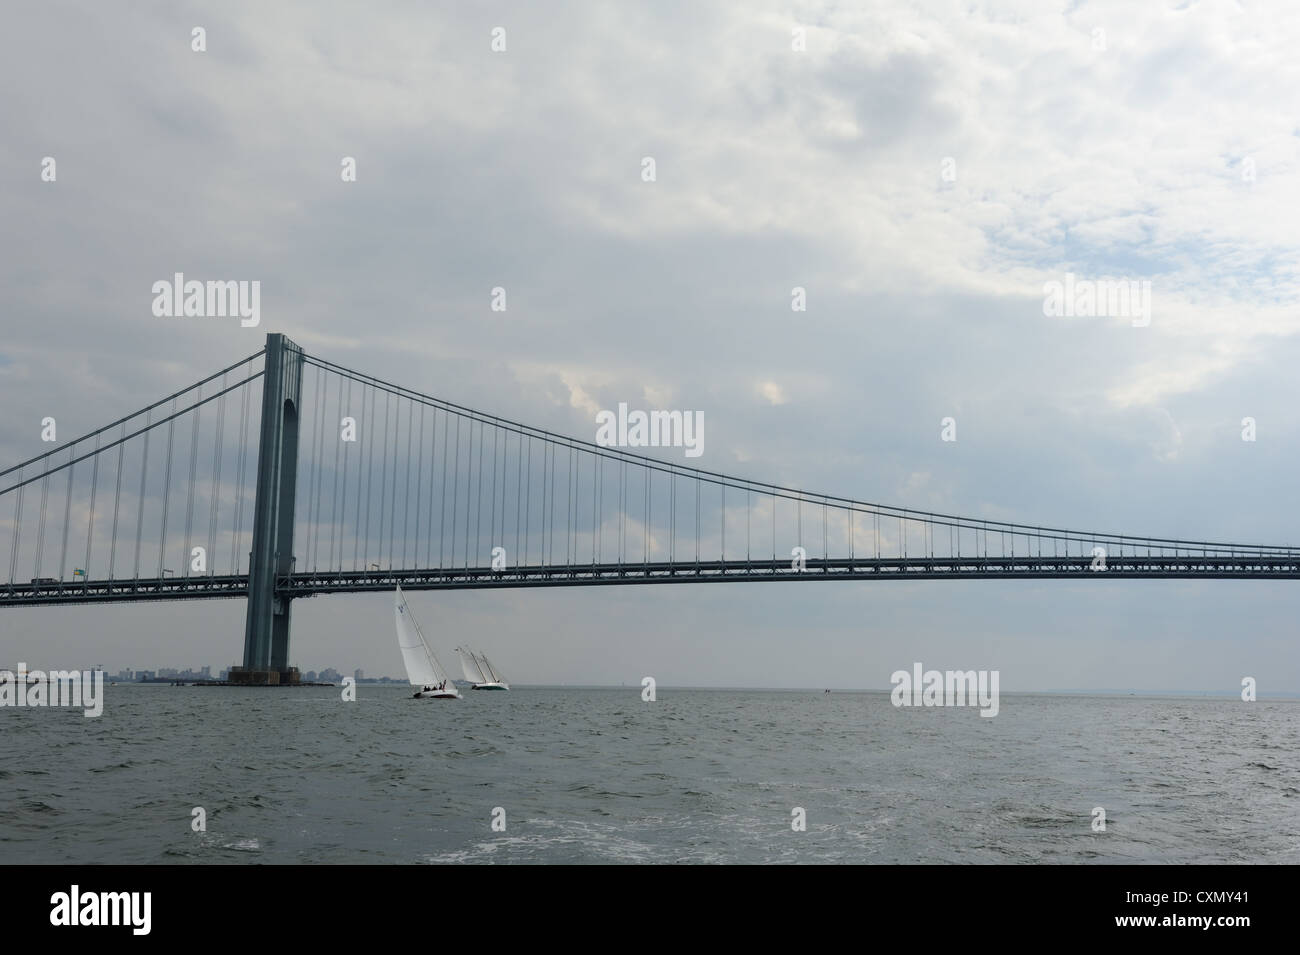 Il Verrazano Narrows Bridge separa la parte superiore del porto di New York da parte inferiore, e l'Oceano Atlantico. Foto Stock